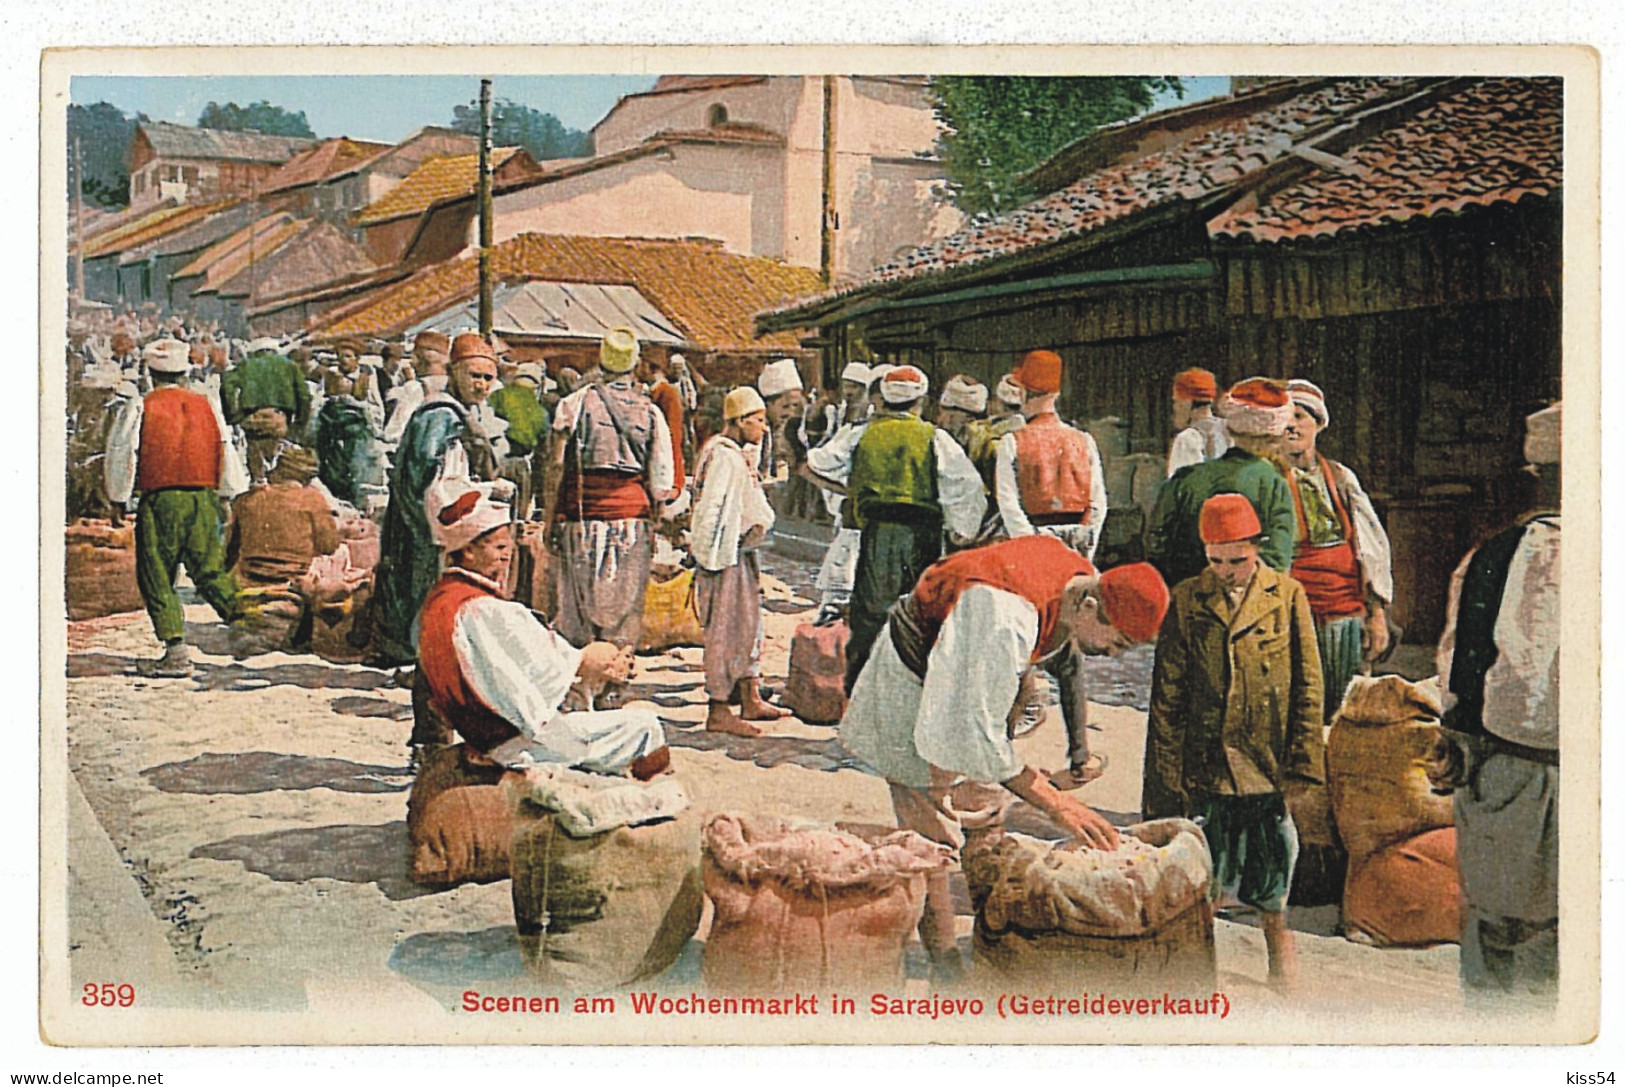 BO 4 - 3235 SARAJEVO, Bosnia, Market - Old Postcard - Unused - Bosnia And Herzegovina